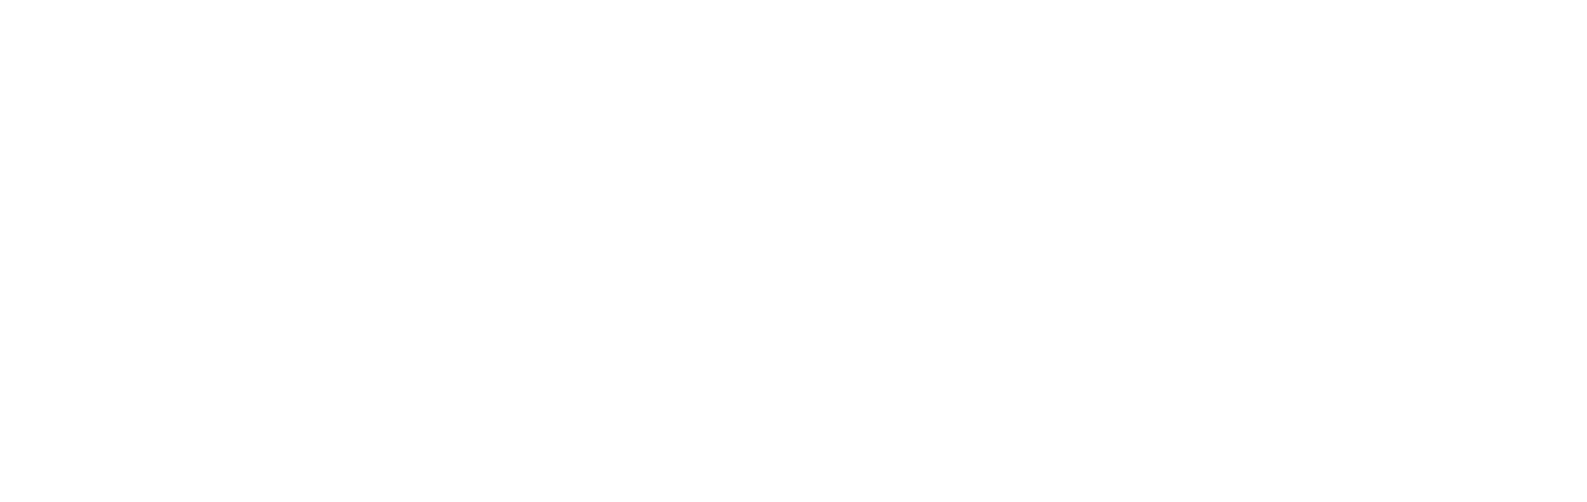 African Rainbow Minerals Logo groß für dunkle Hintergründe (transparentes PNG)